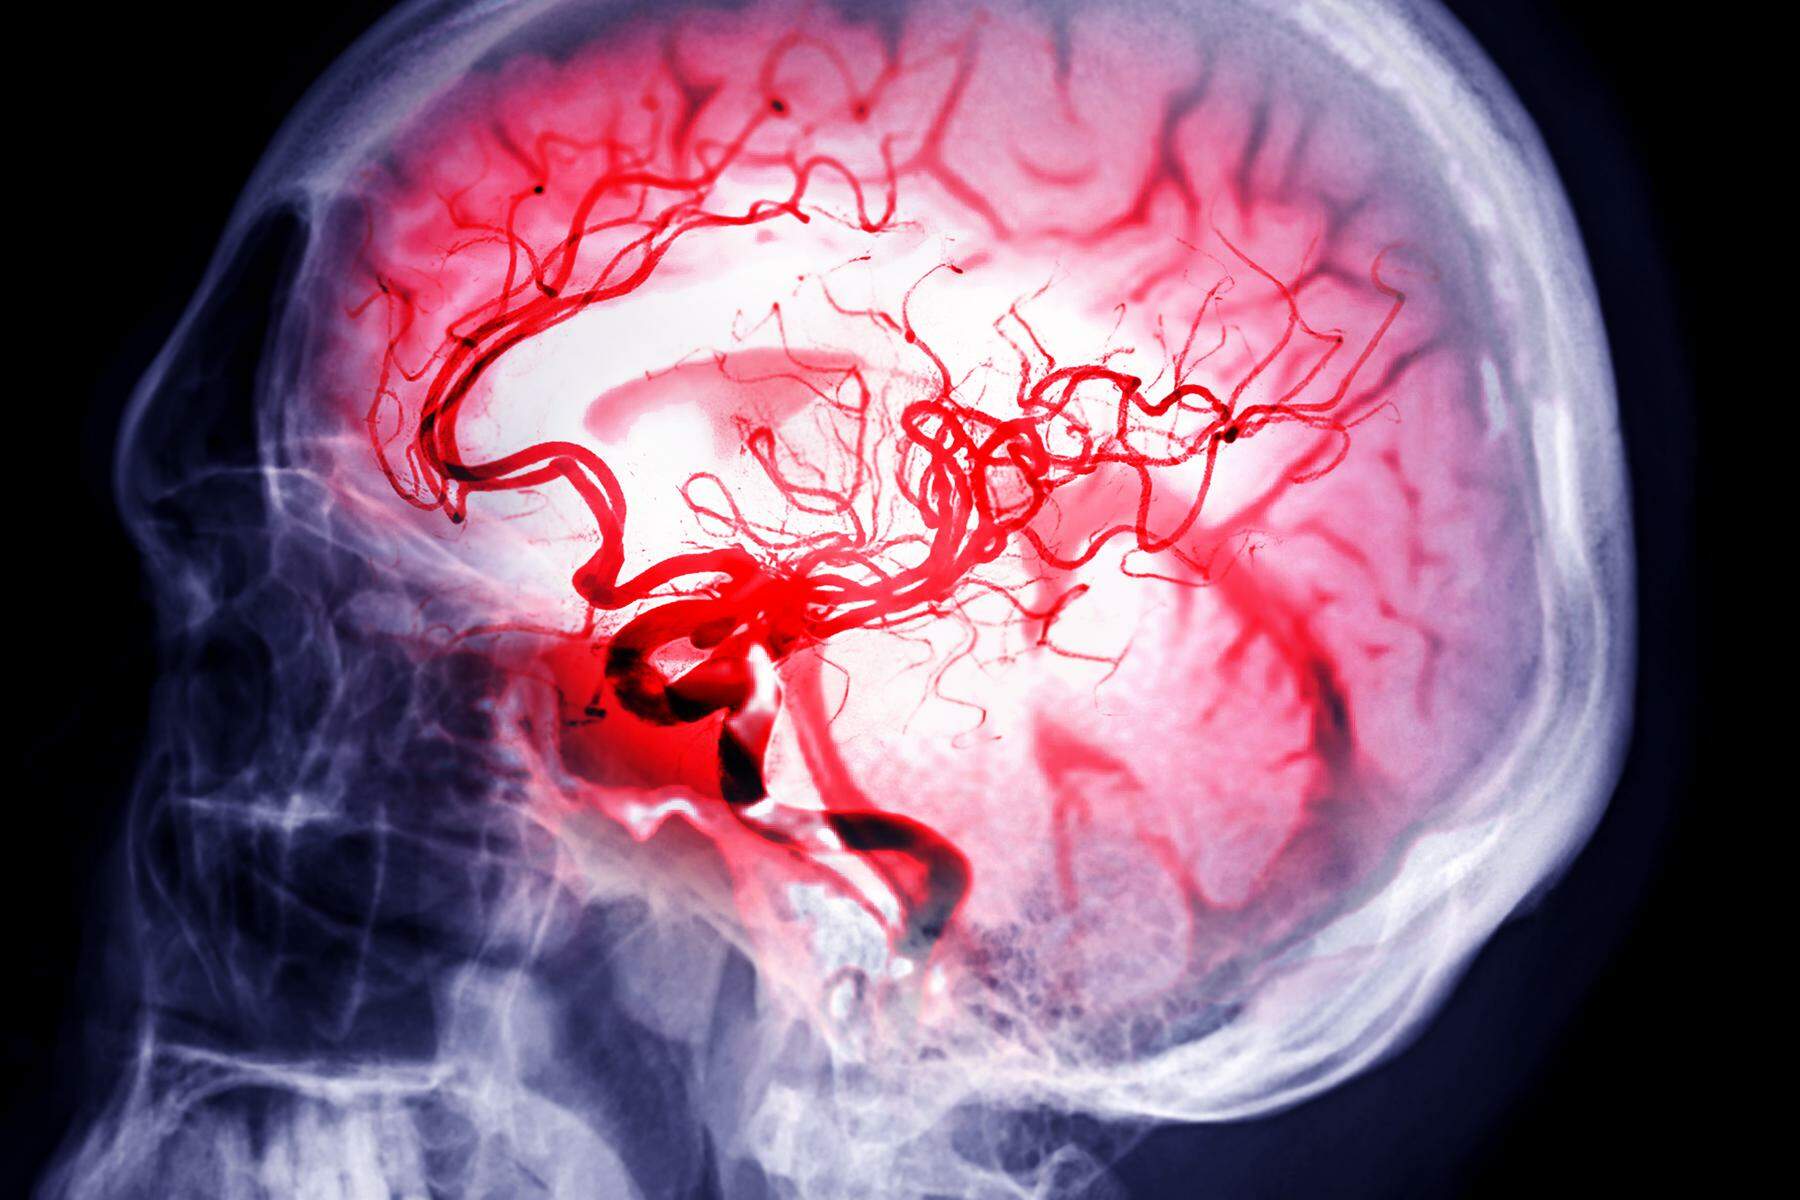 Überschwemmung im Gehirn: Wie man die Schlaganfall-Behandlung verbessern könnte